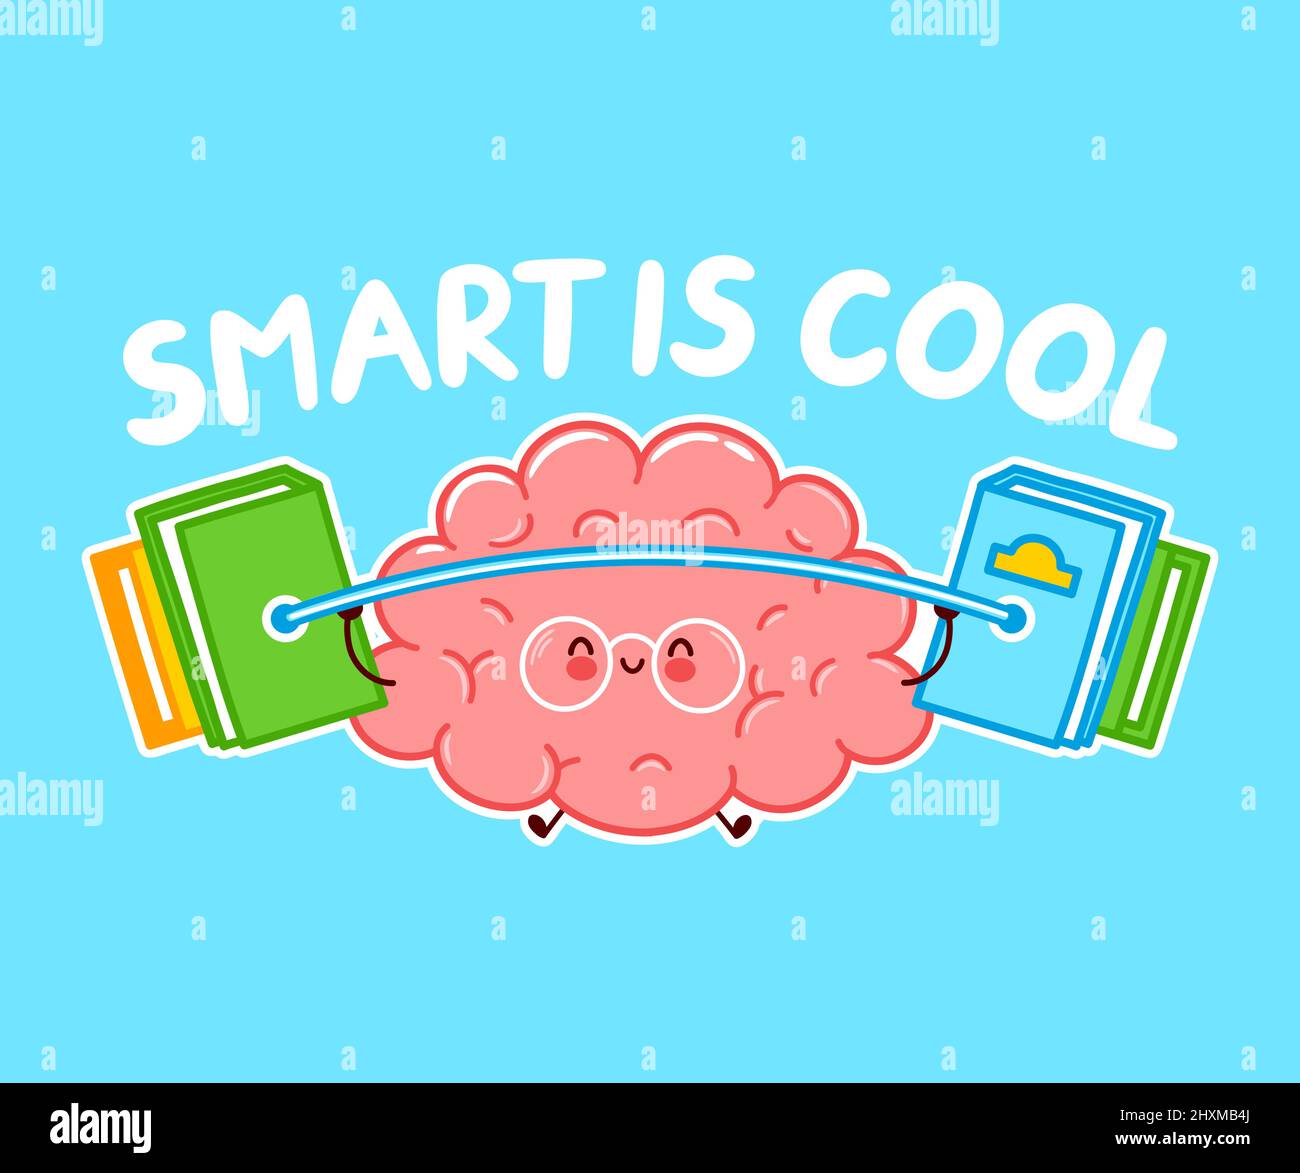 Smart è cool citazione slogan.Cute divertente cervello umano organo personaggio formazione con libri barbell. Vettore linea piatta cartoon kawaii carattere icona illustrazione. Concetto di logo del personaggio del treno di organi cerebrali Illustrazione Vettoriale